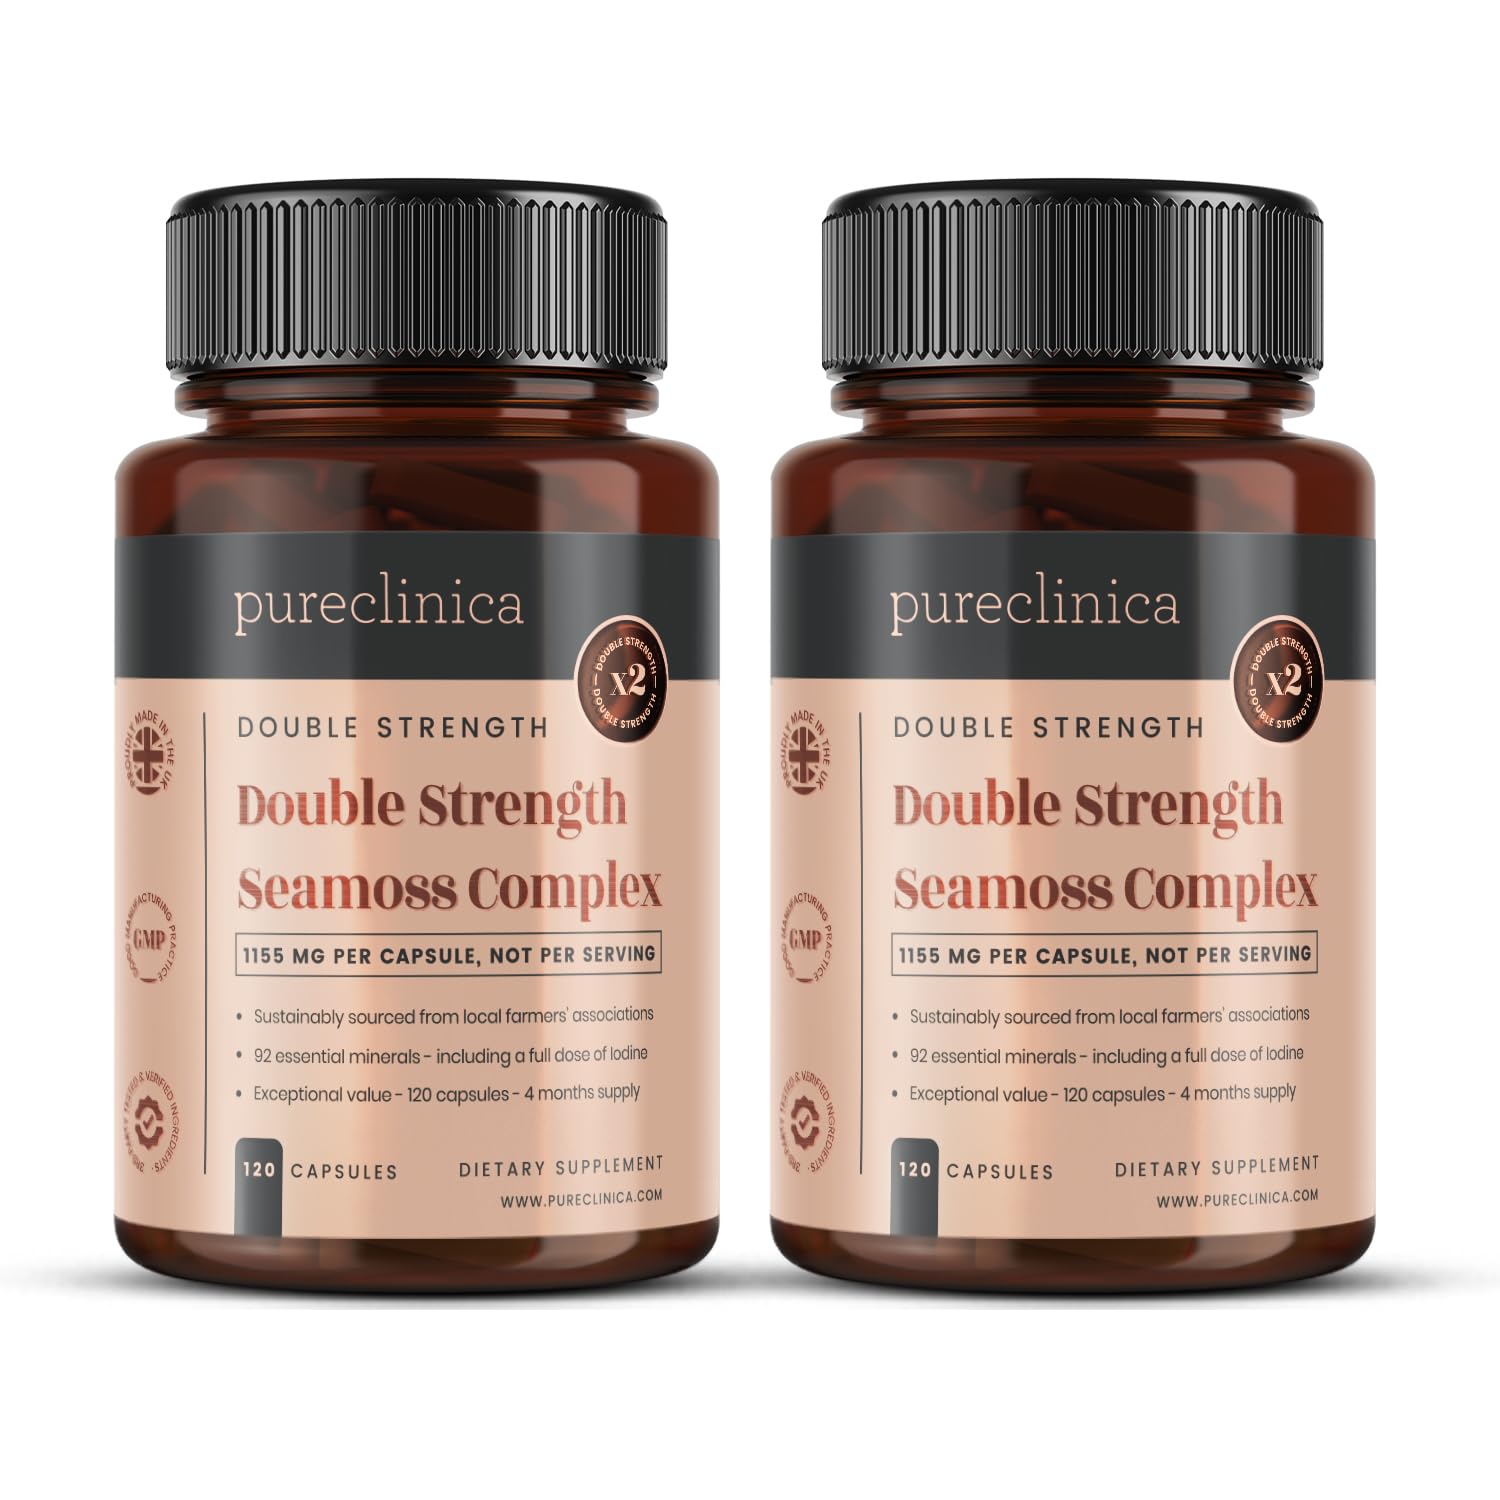 Pureclinica Seamoss-Komplex mit doppelter Stärke – 1155 mg x 240 Kapseln (2 Flaschen à 120 Stück) – Vorrat für 8 Monate – mit 500 mg Seamoss, Blasentang und Klettenwurzel